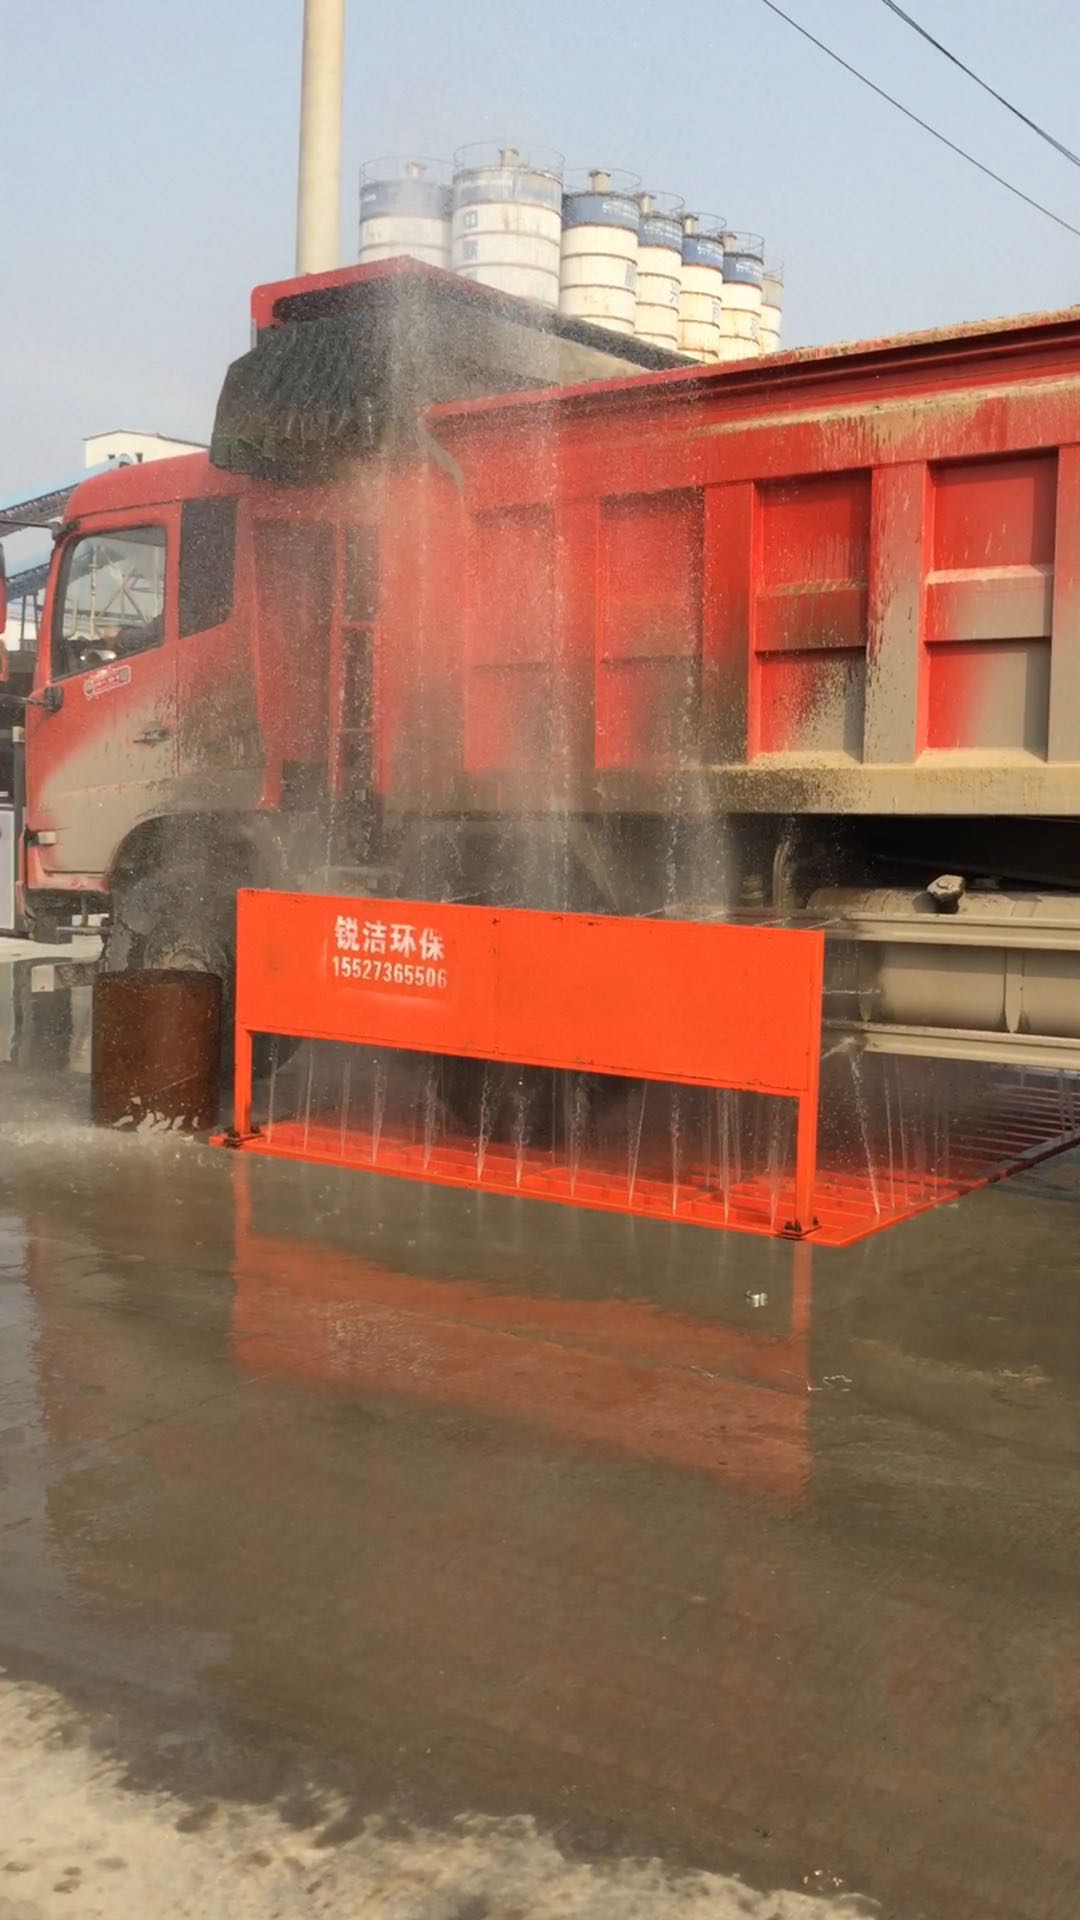 荆州工地洗轮机 工程车辆冲洗平台 全自动清洗设备 大量供应 质保一年